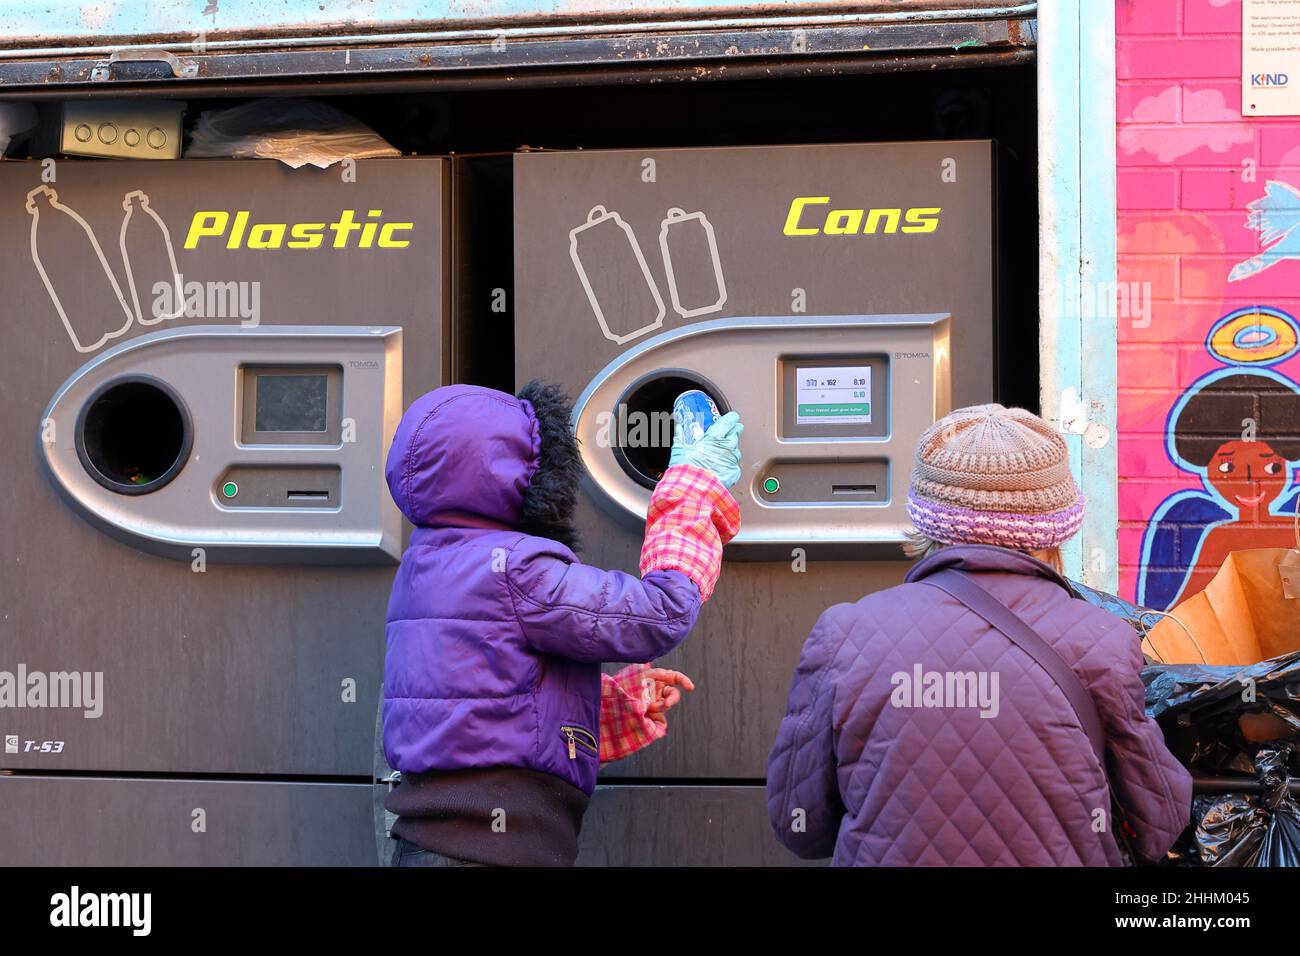 Una persona que usa una máquina expendedora inversa Tomra T-53 para canjear botellas y latas reciclables por su dinero de depósito de botellas en la ciudad de Nueva York. Foto de stock